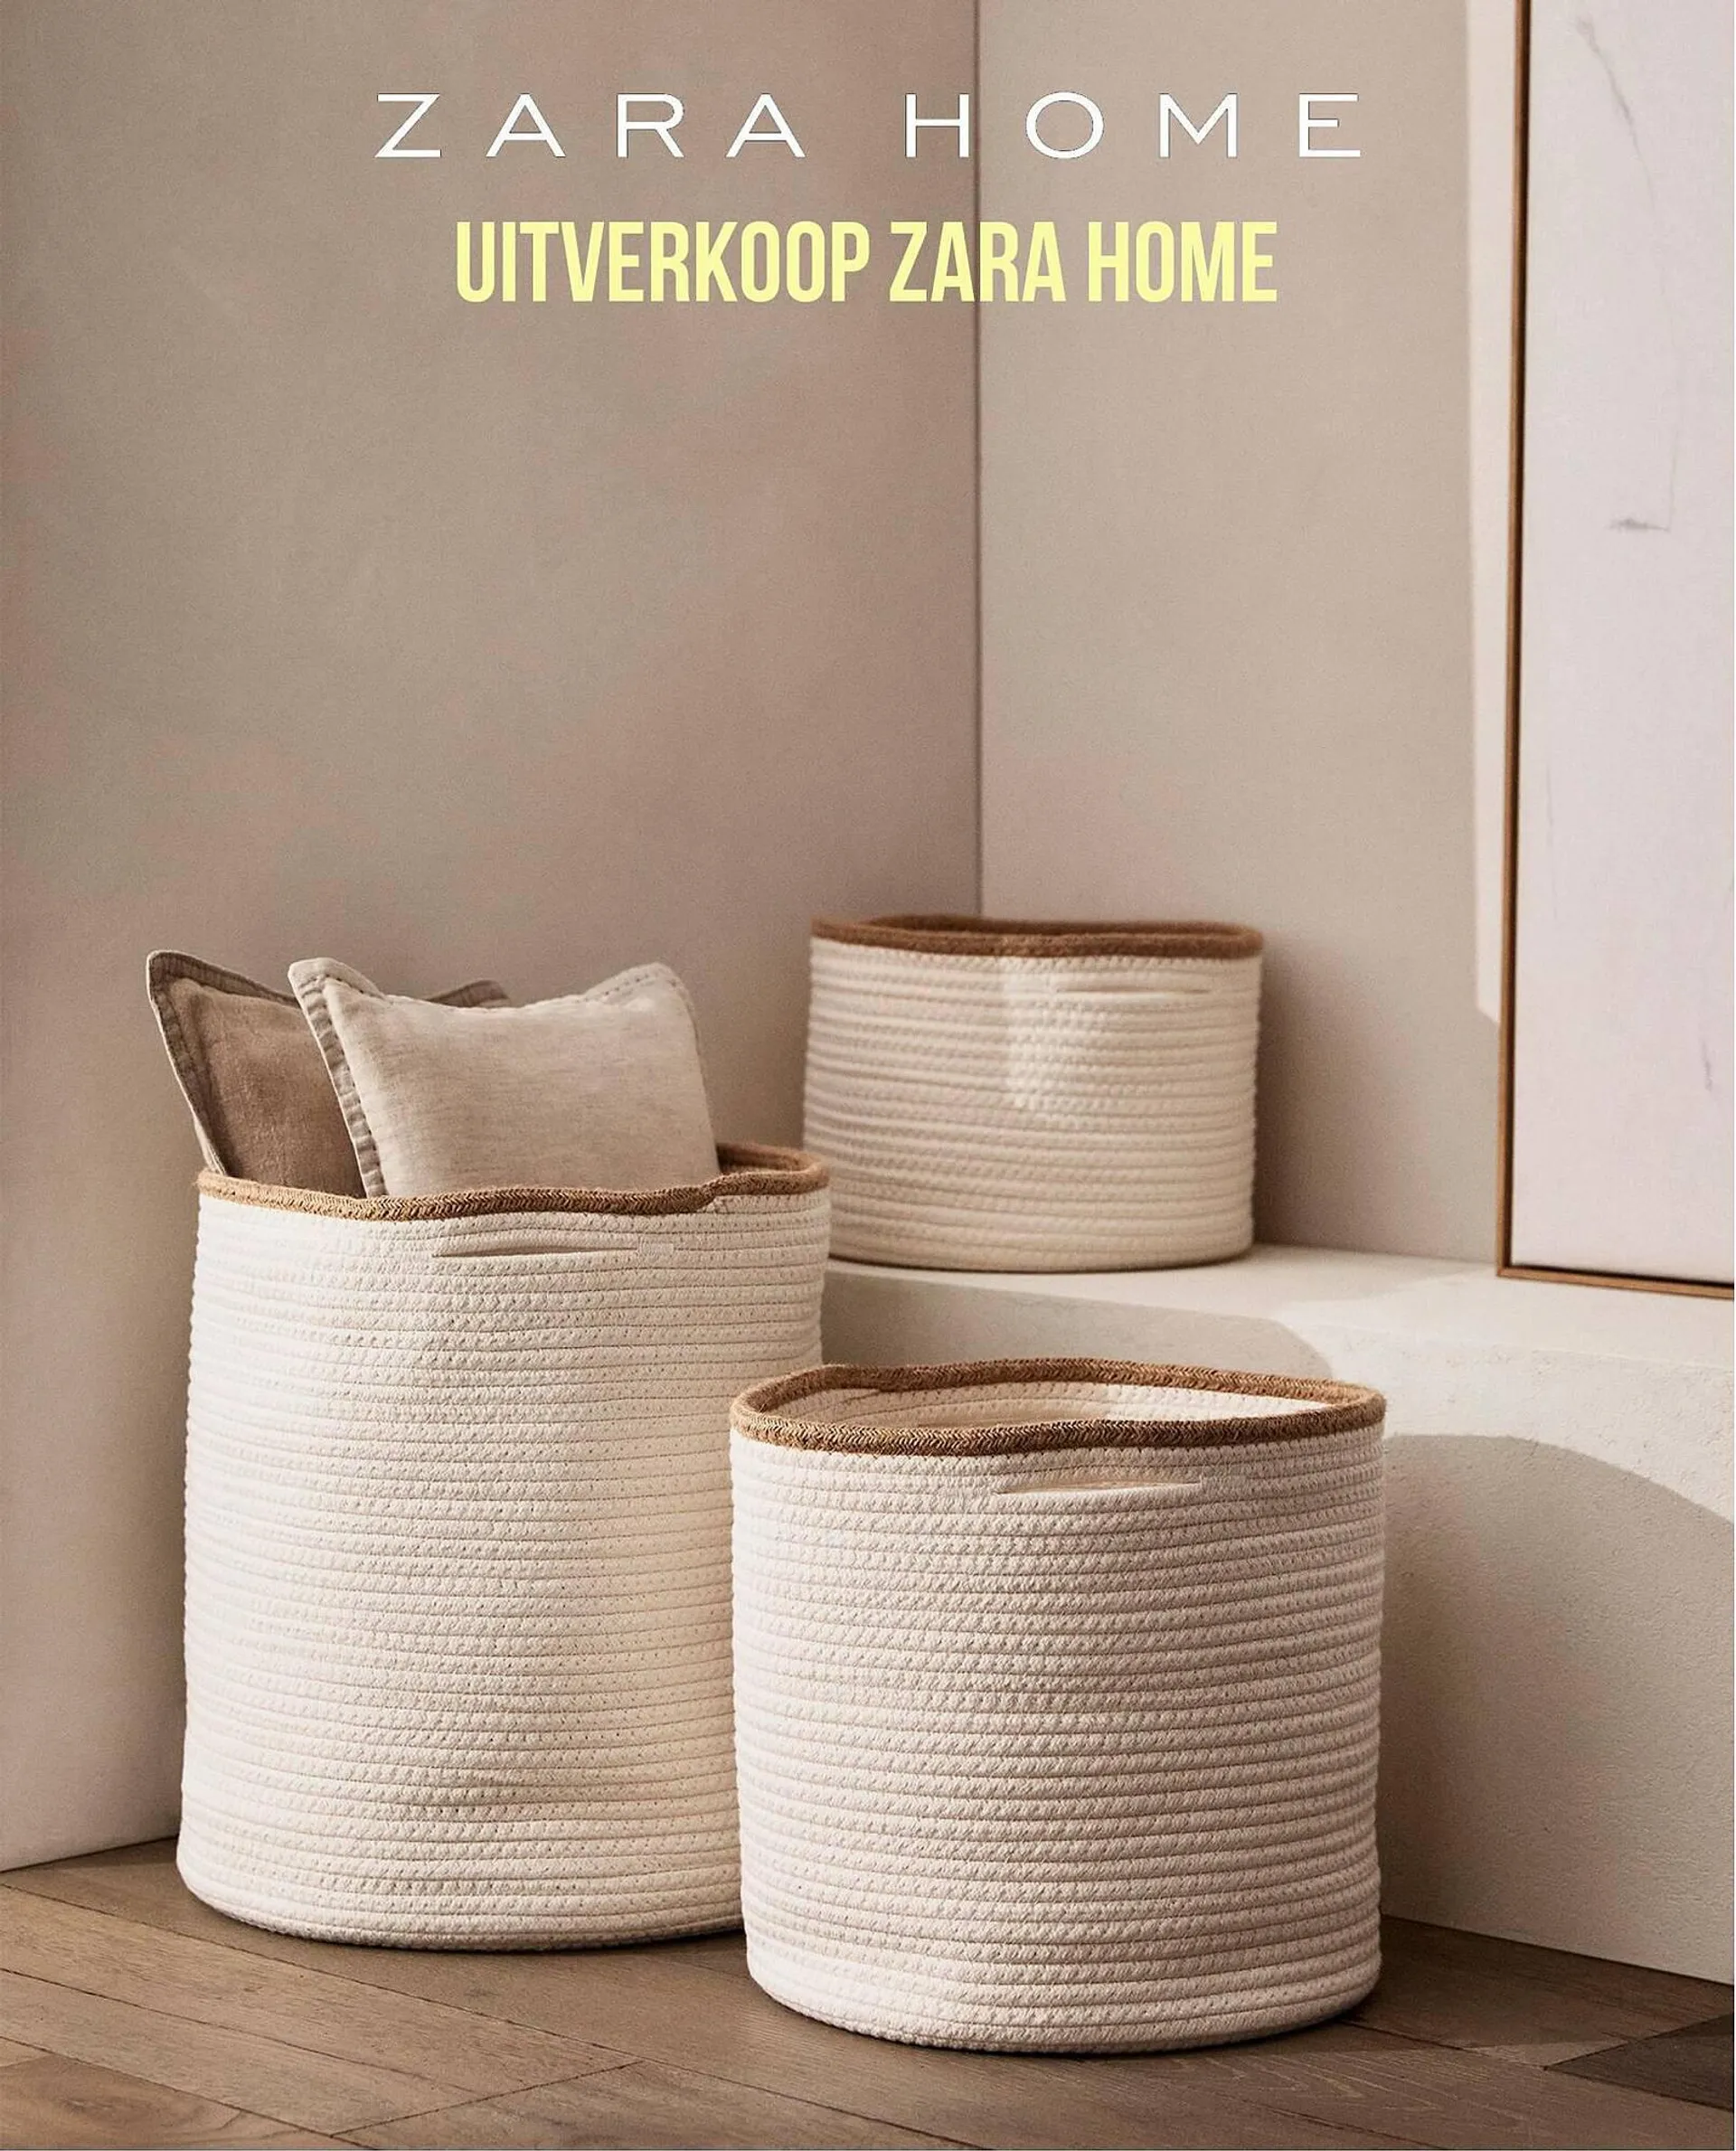 Zara Home folder - 1